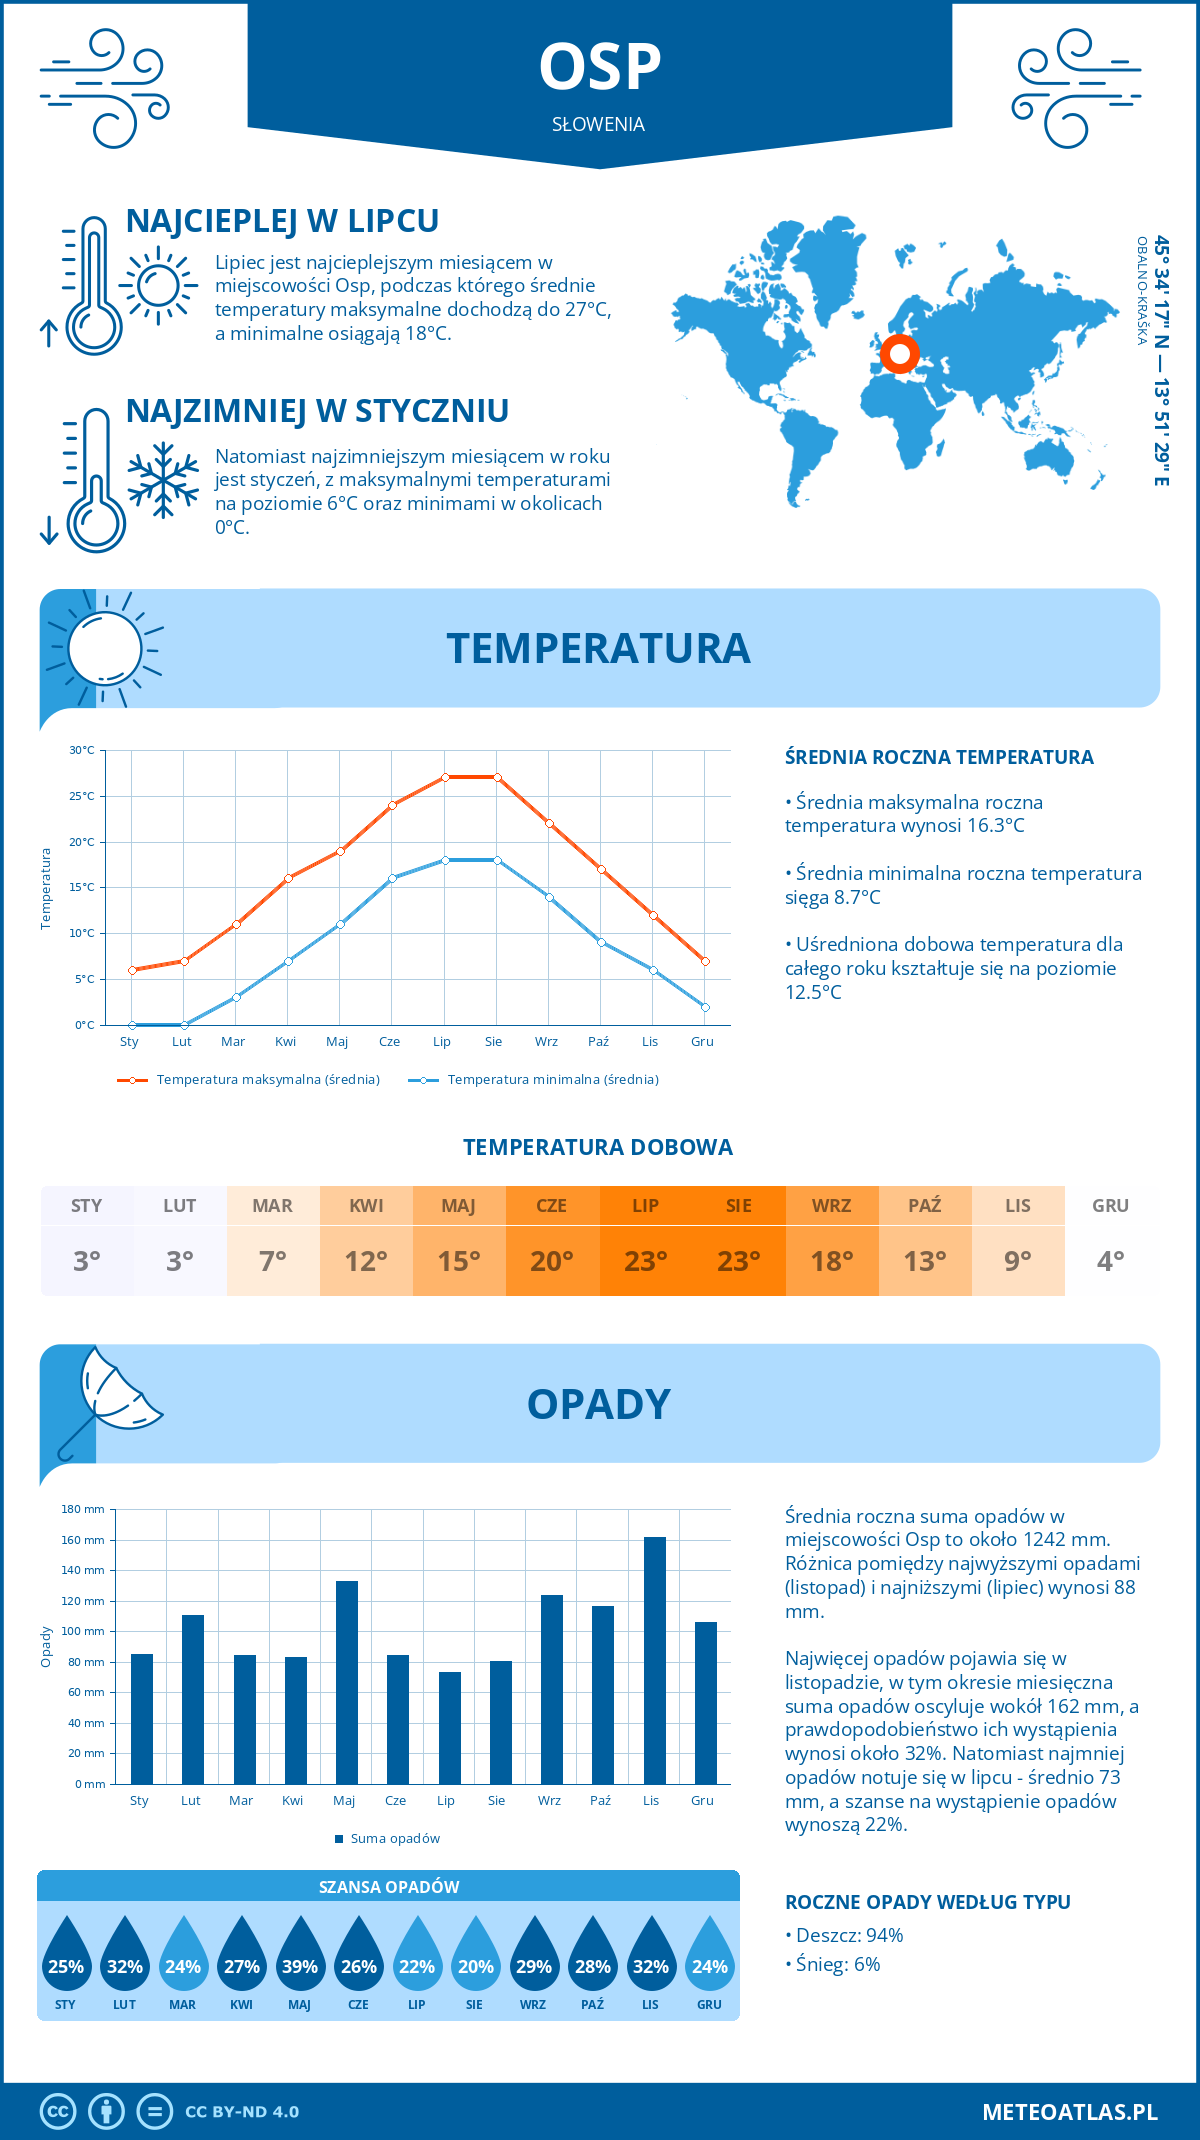 Pogoda Osp (Słowenia). Temperatura oraz opady.